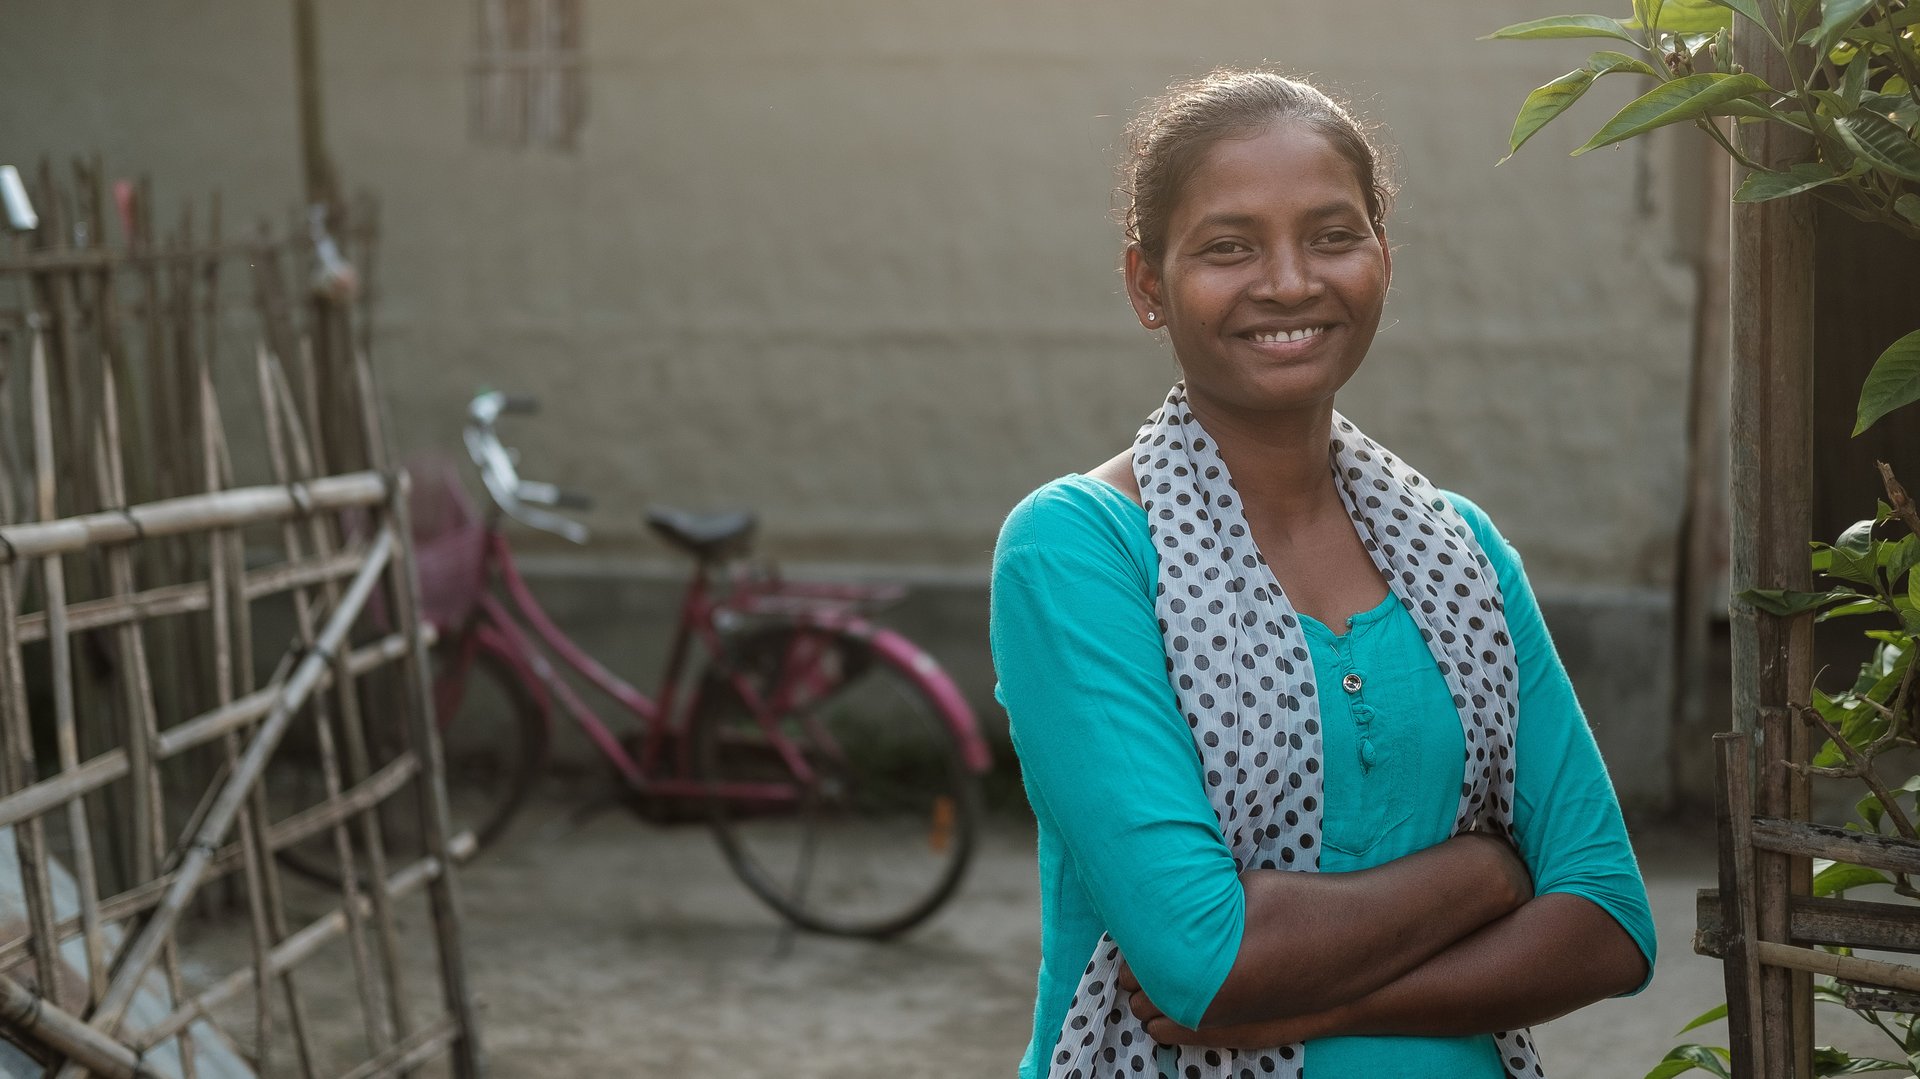 Indien: junge Frau vor einem Fahrrad